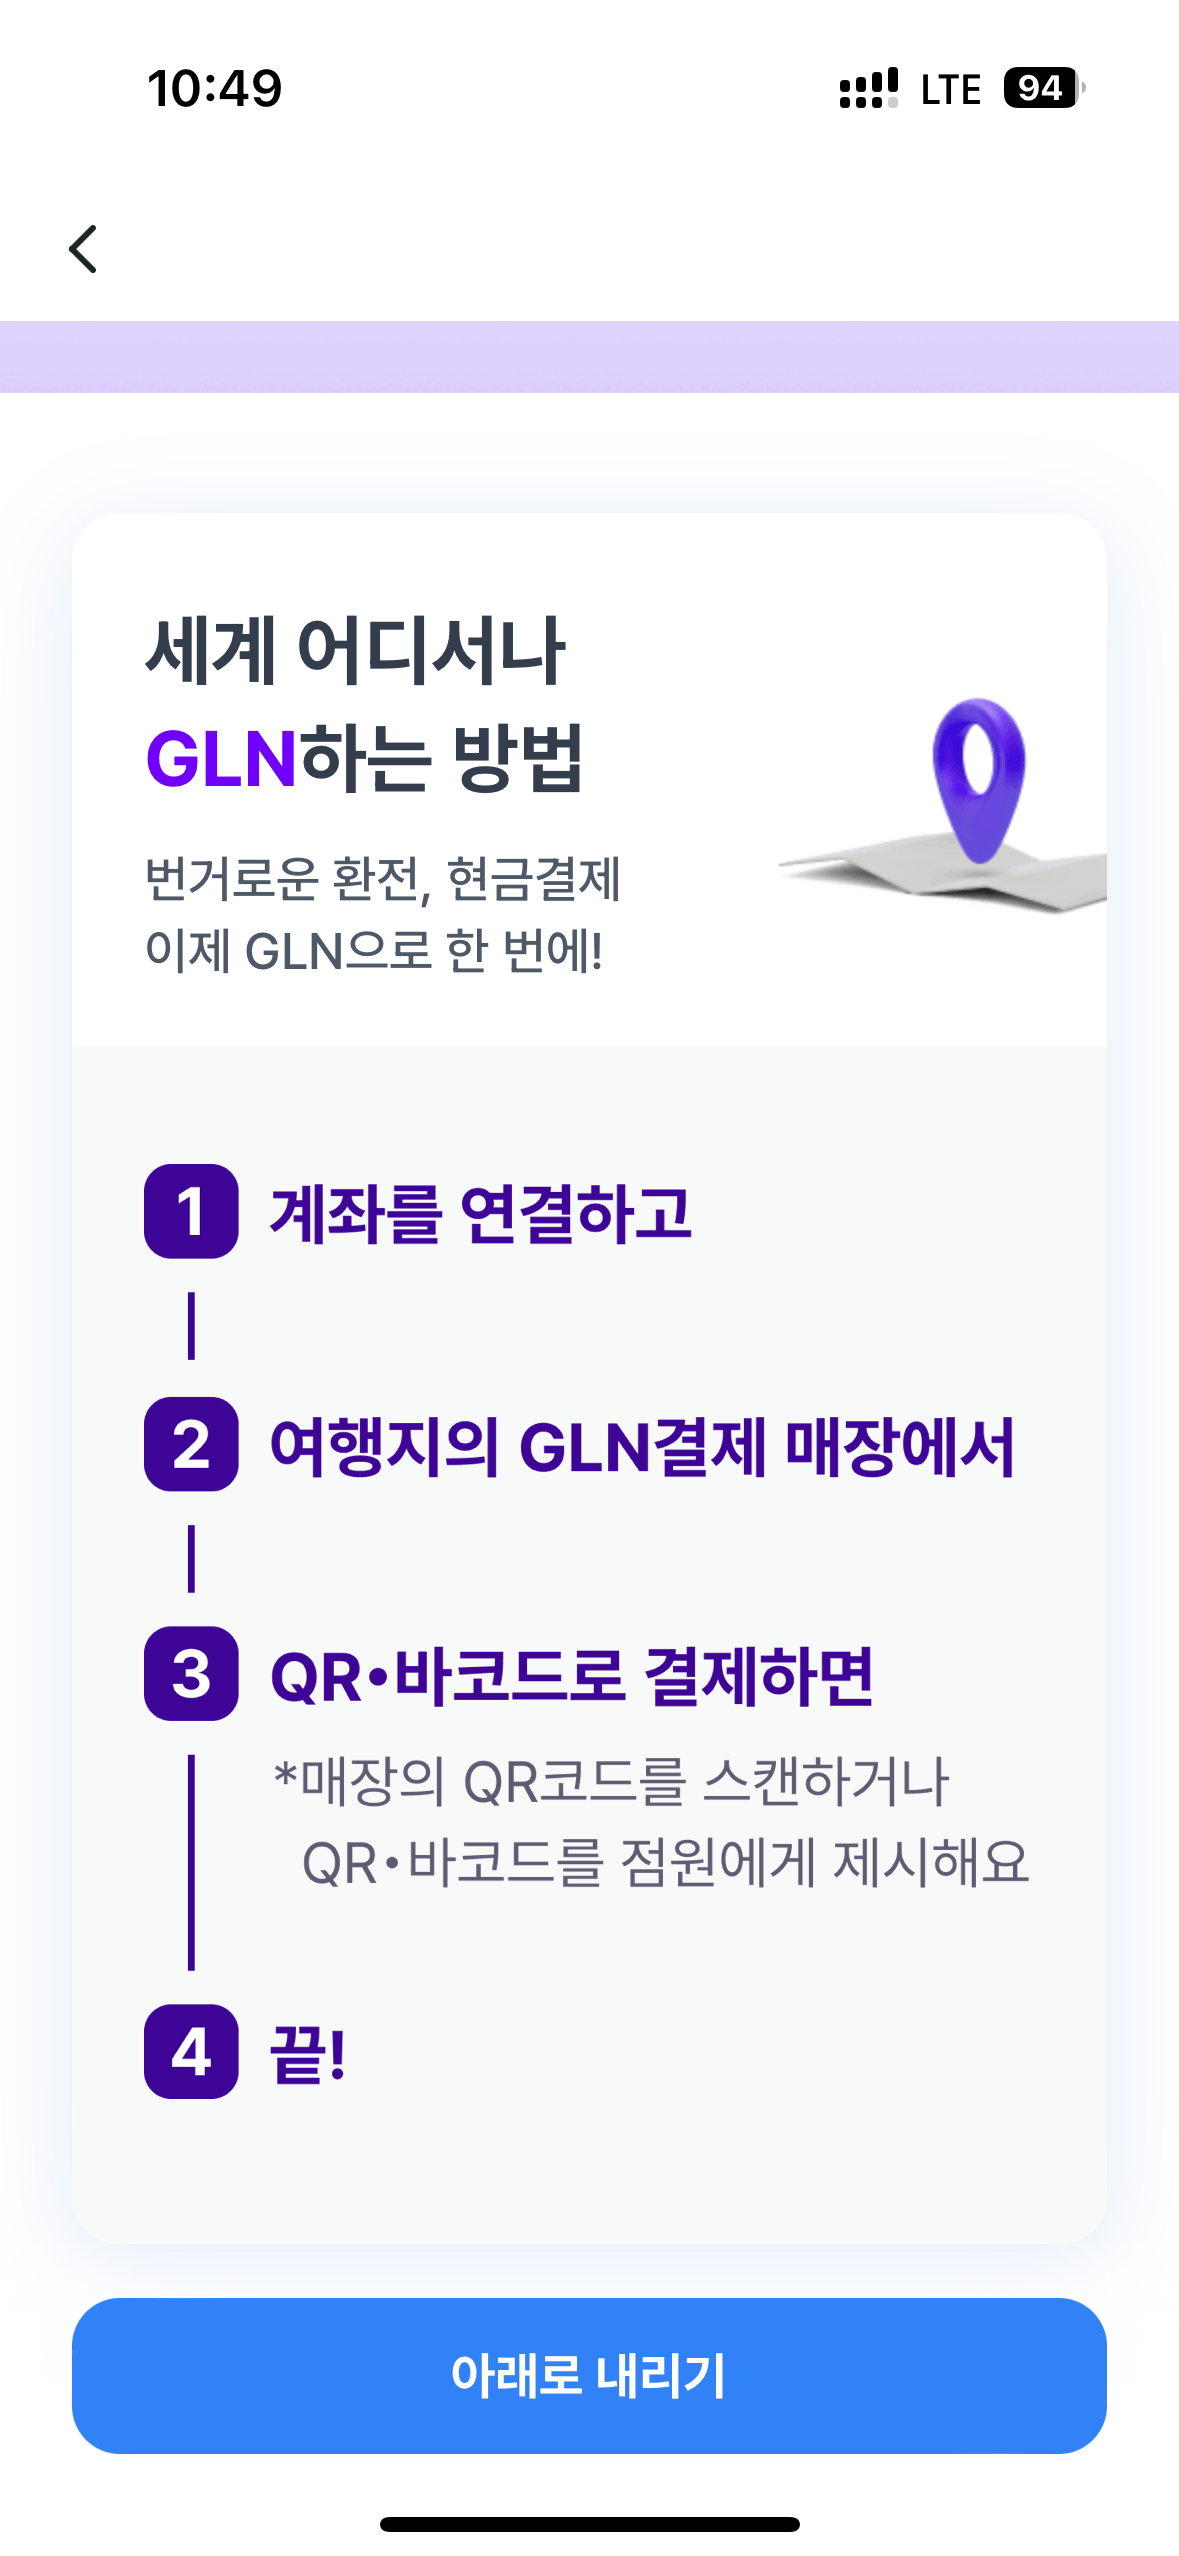 3) GLN 등록방법